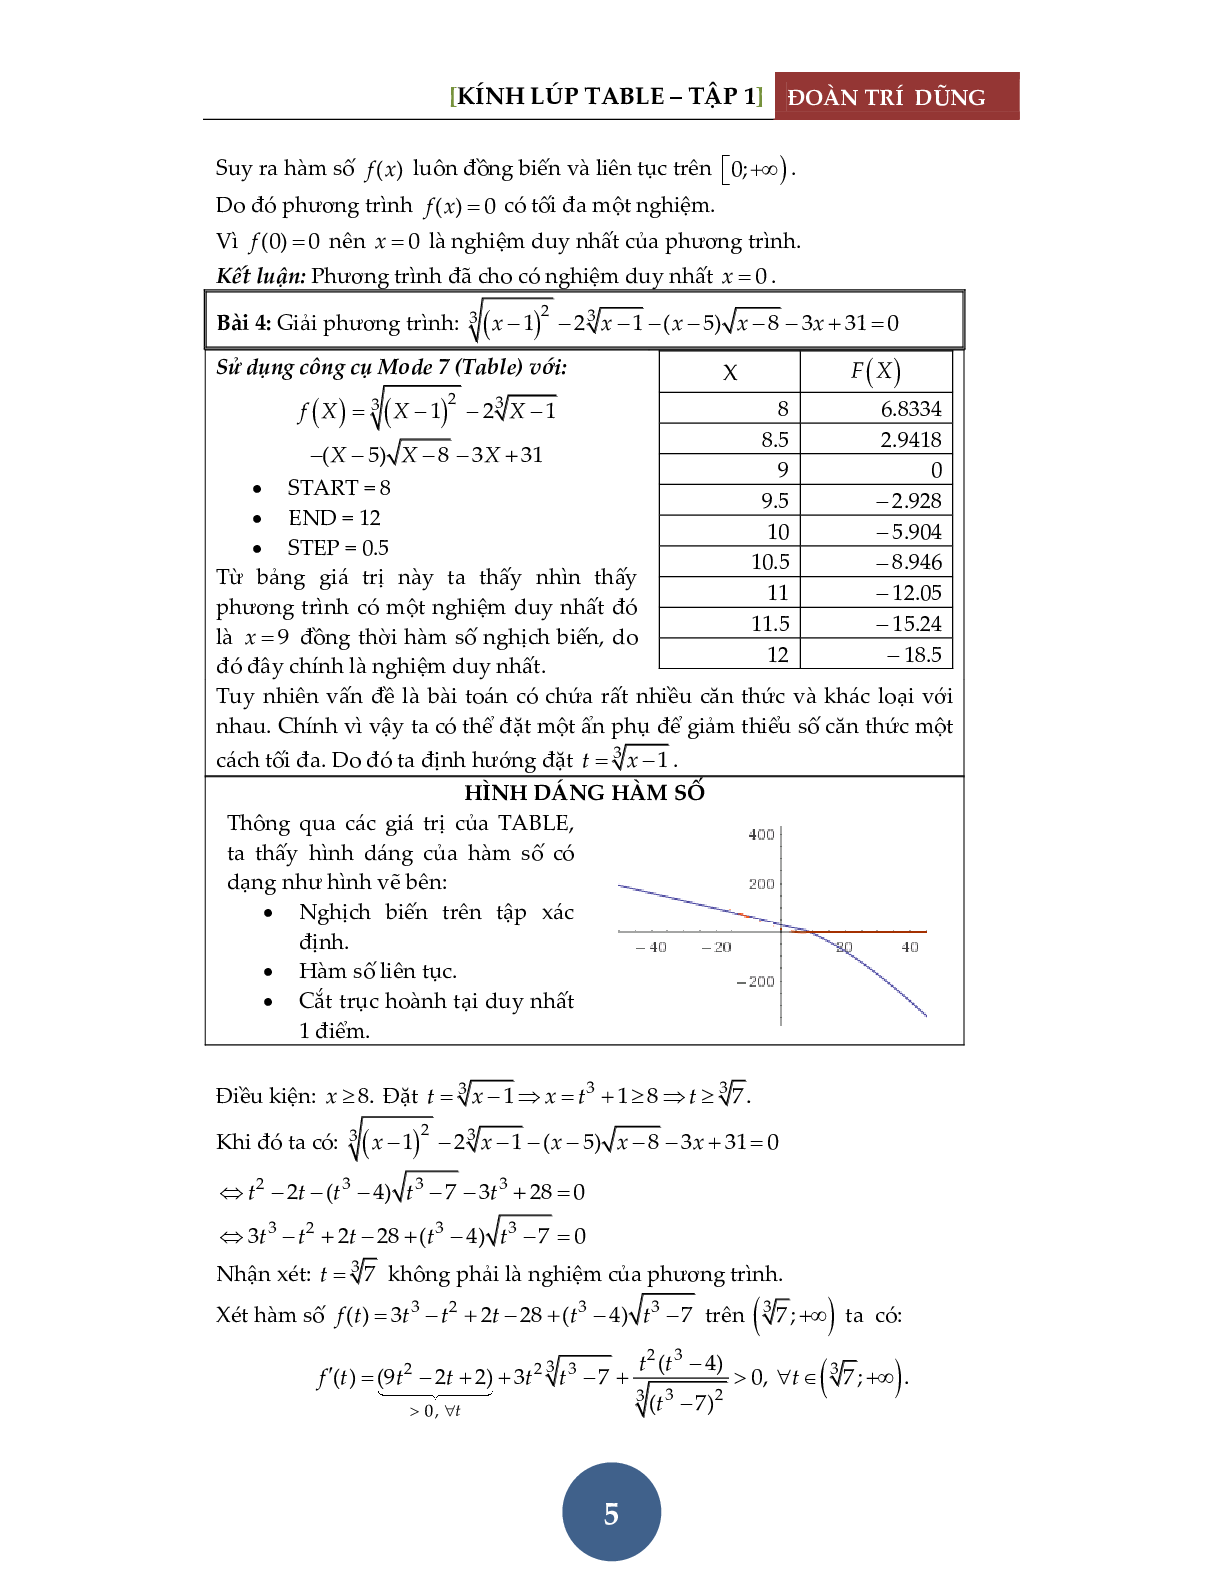 Giải phương trình bằng máy tính Casio – Tập 1: Đánh giá hàm đơn điệu (trang 6)